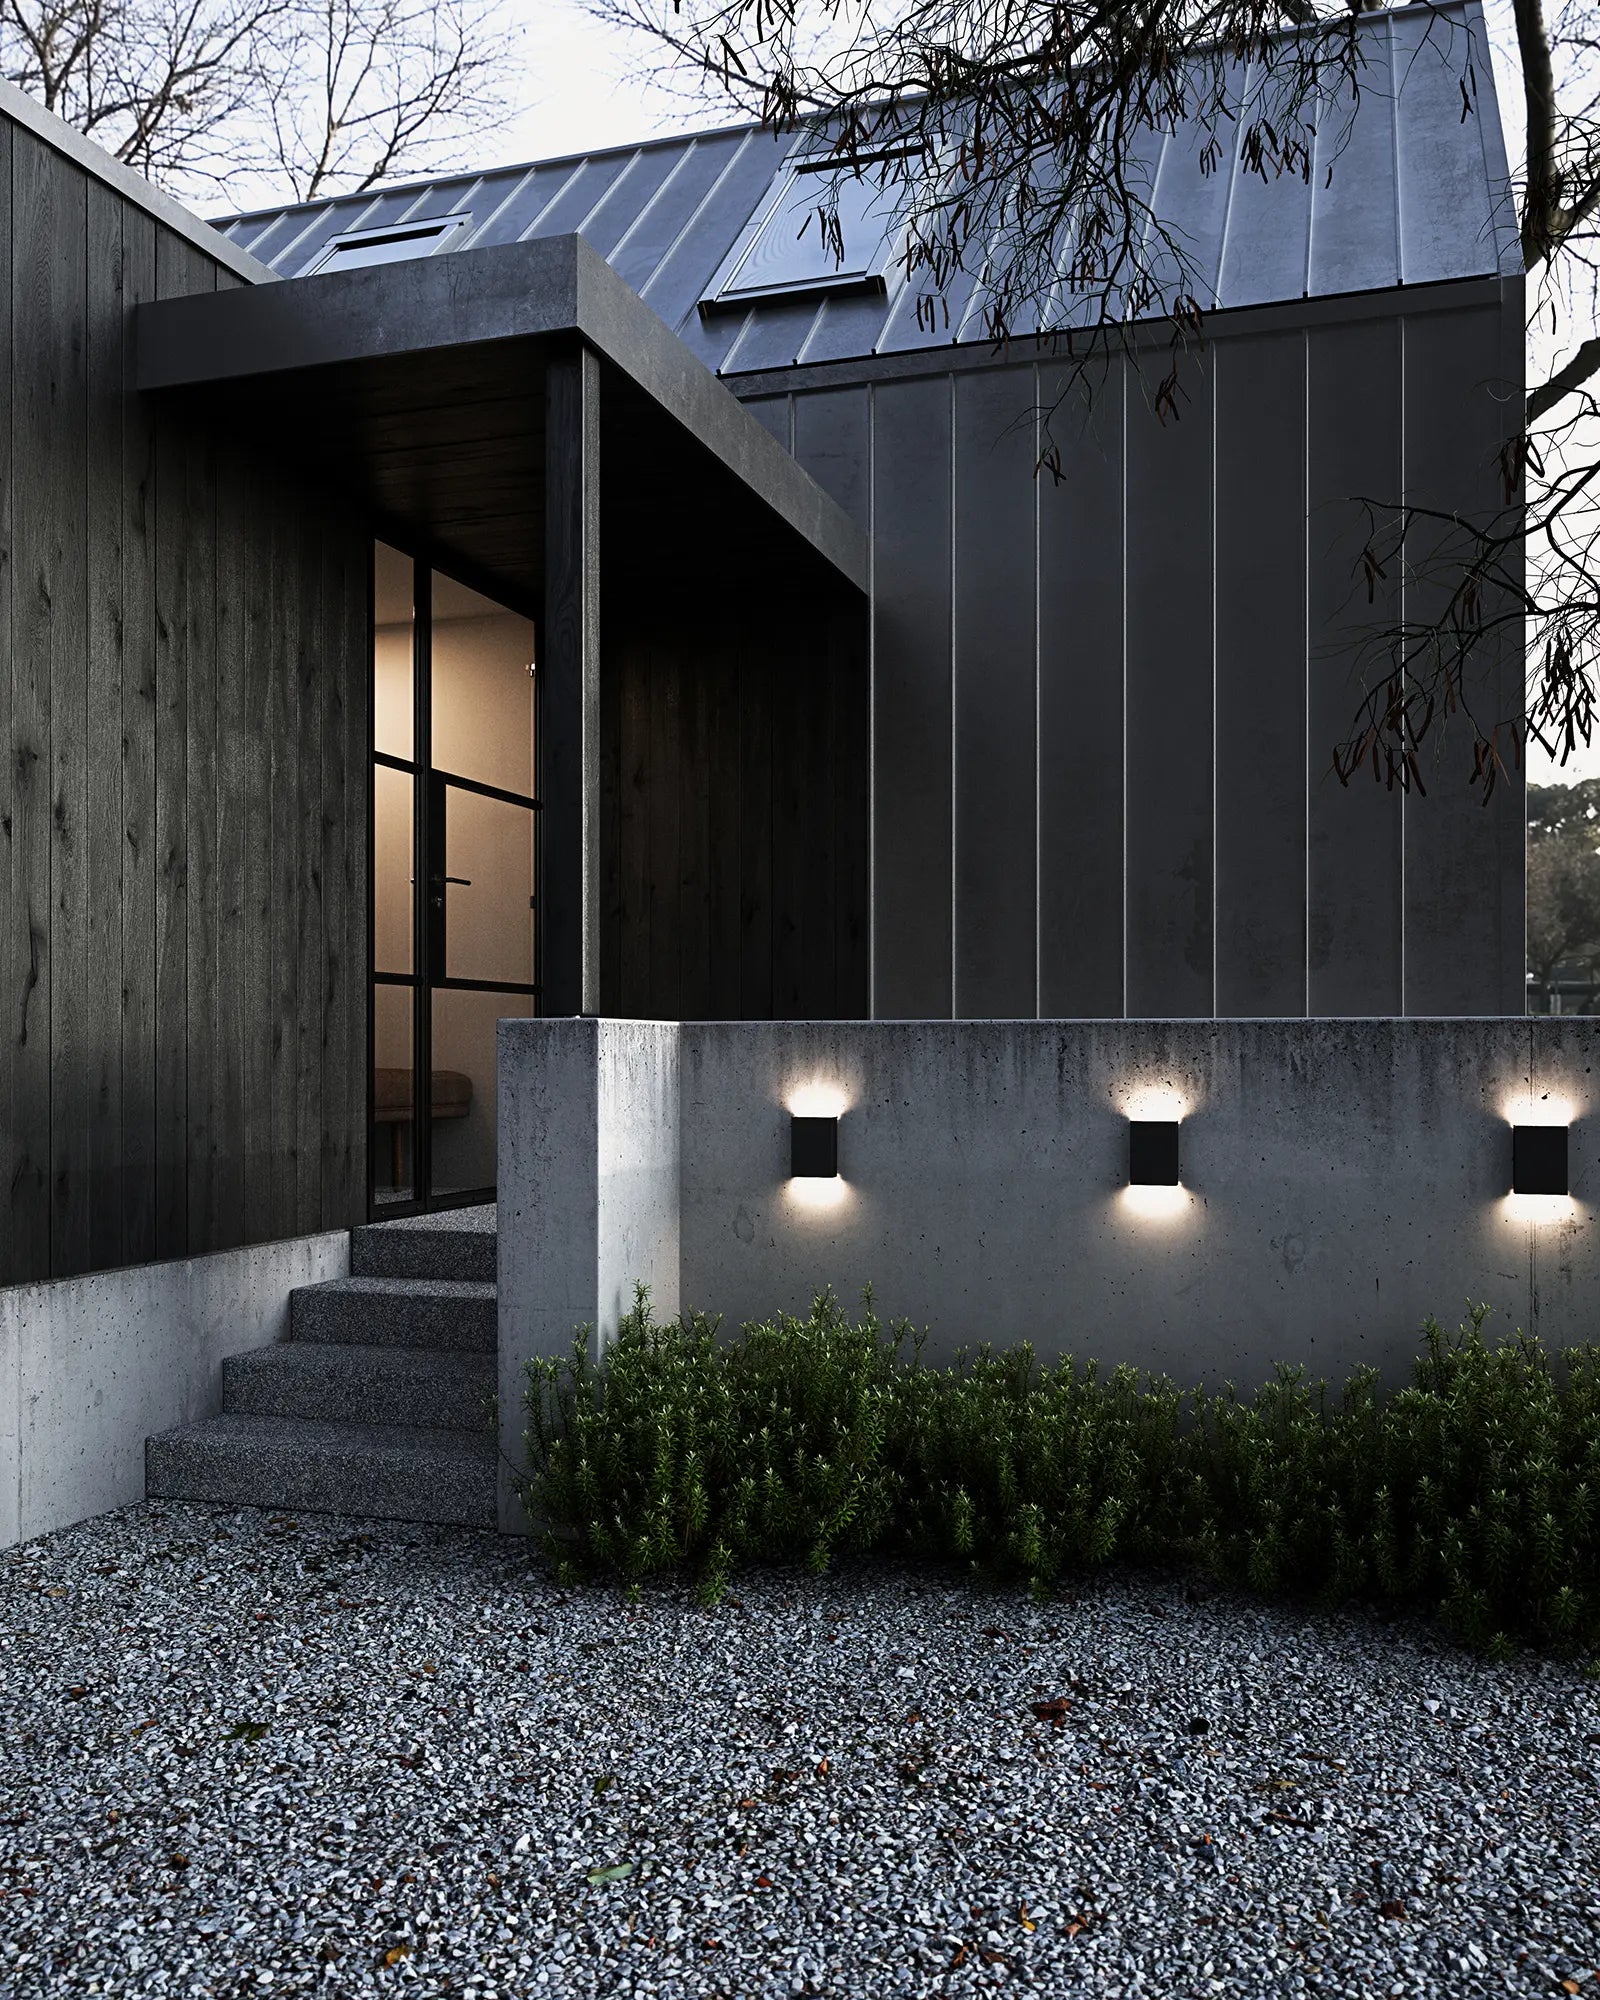 Fold 15 rectangular minimal outdoor Scandinavian light on a concrete wall